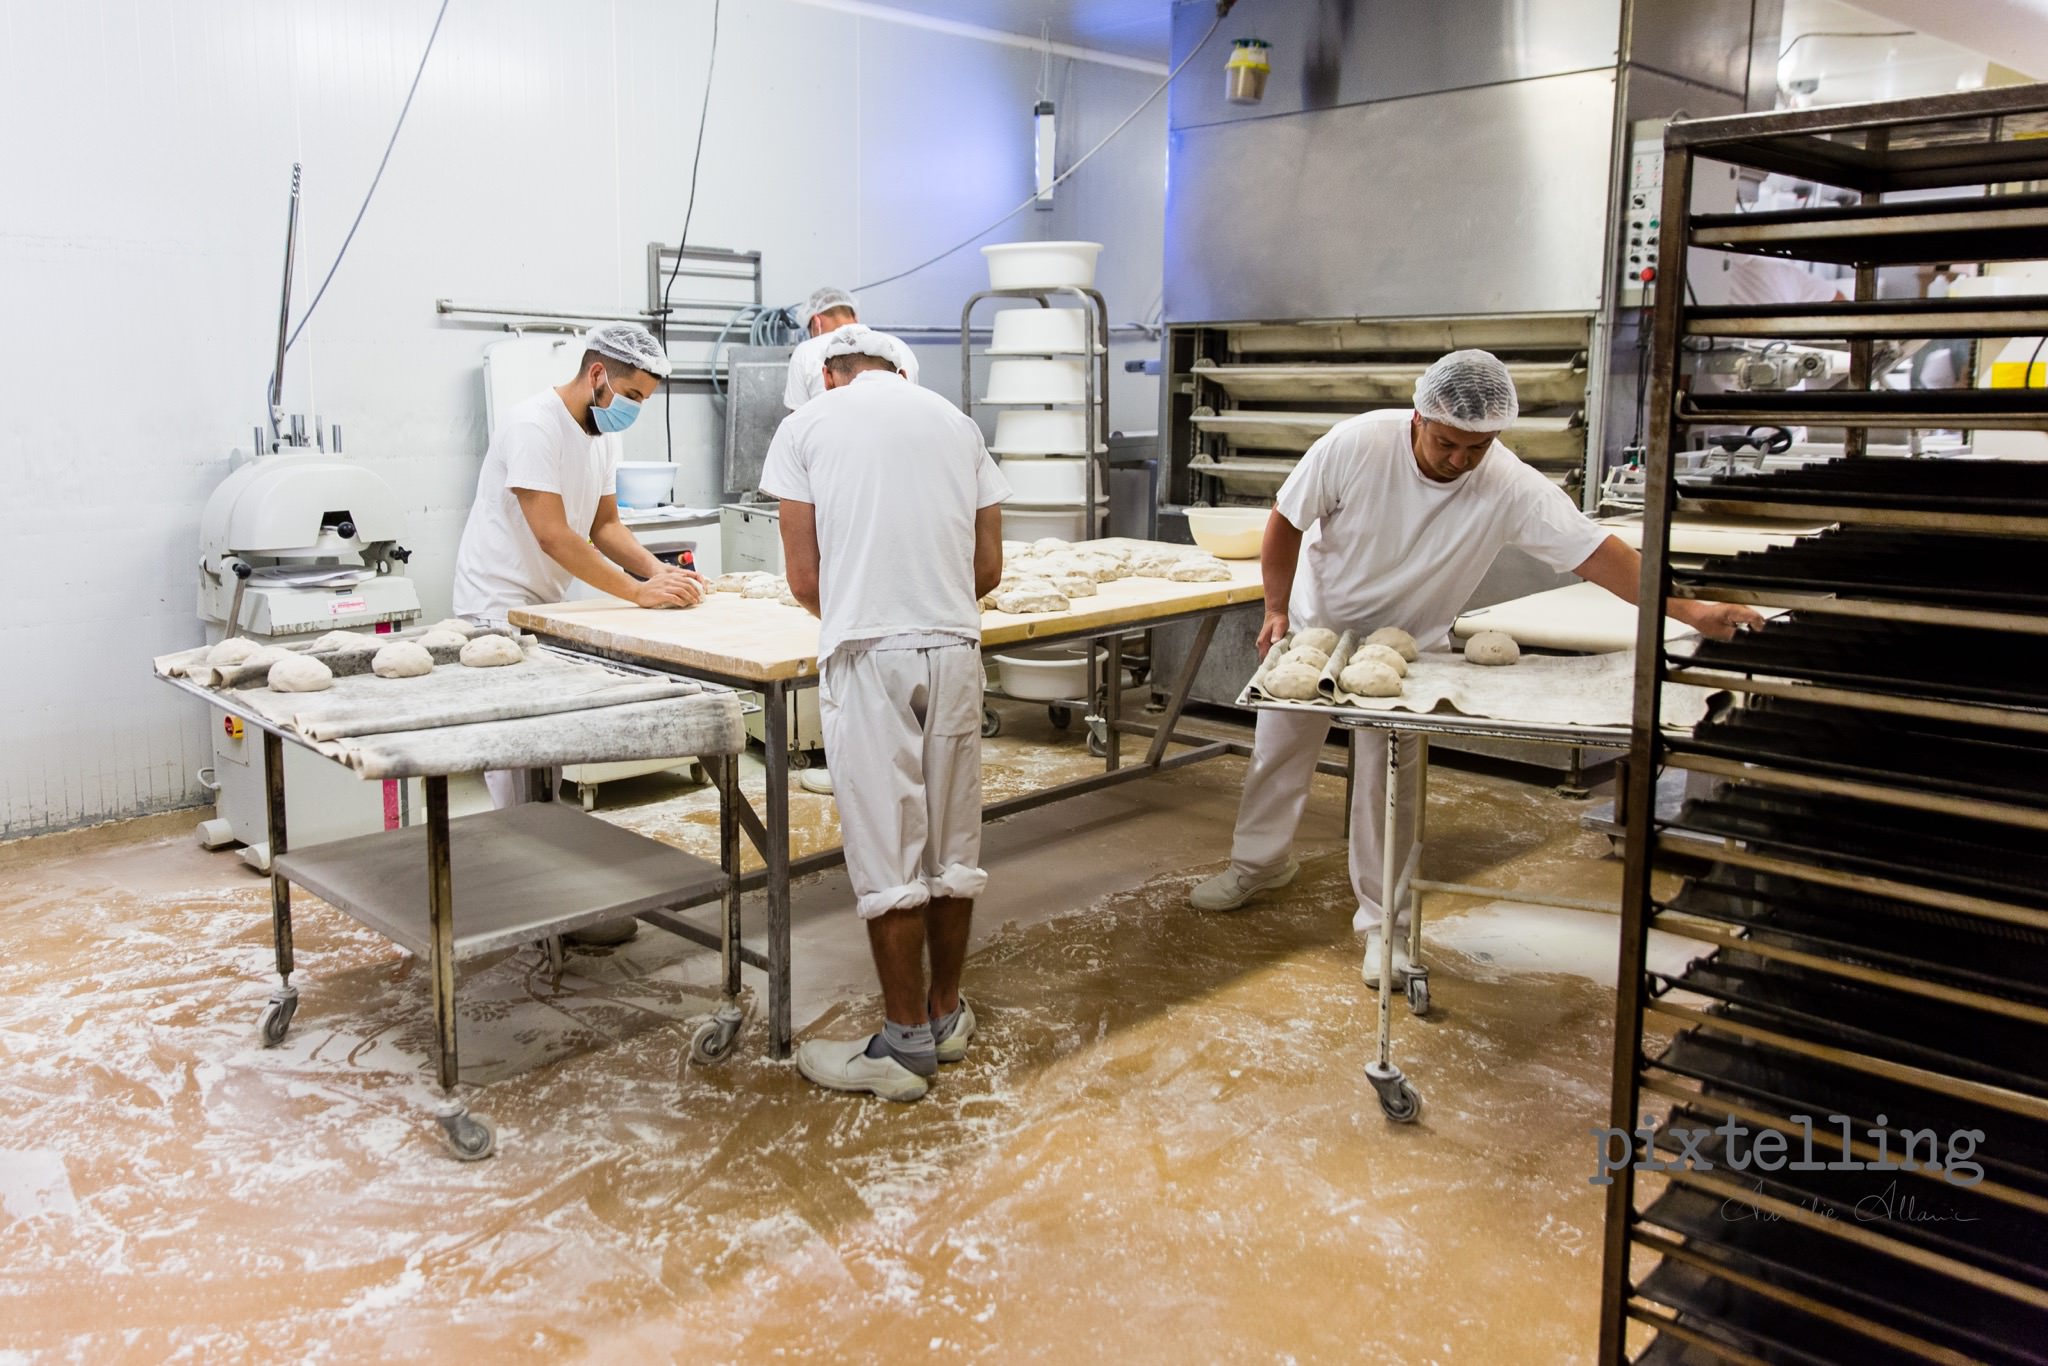 photo atelier boulangerie grenoble pixtelling